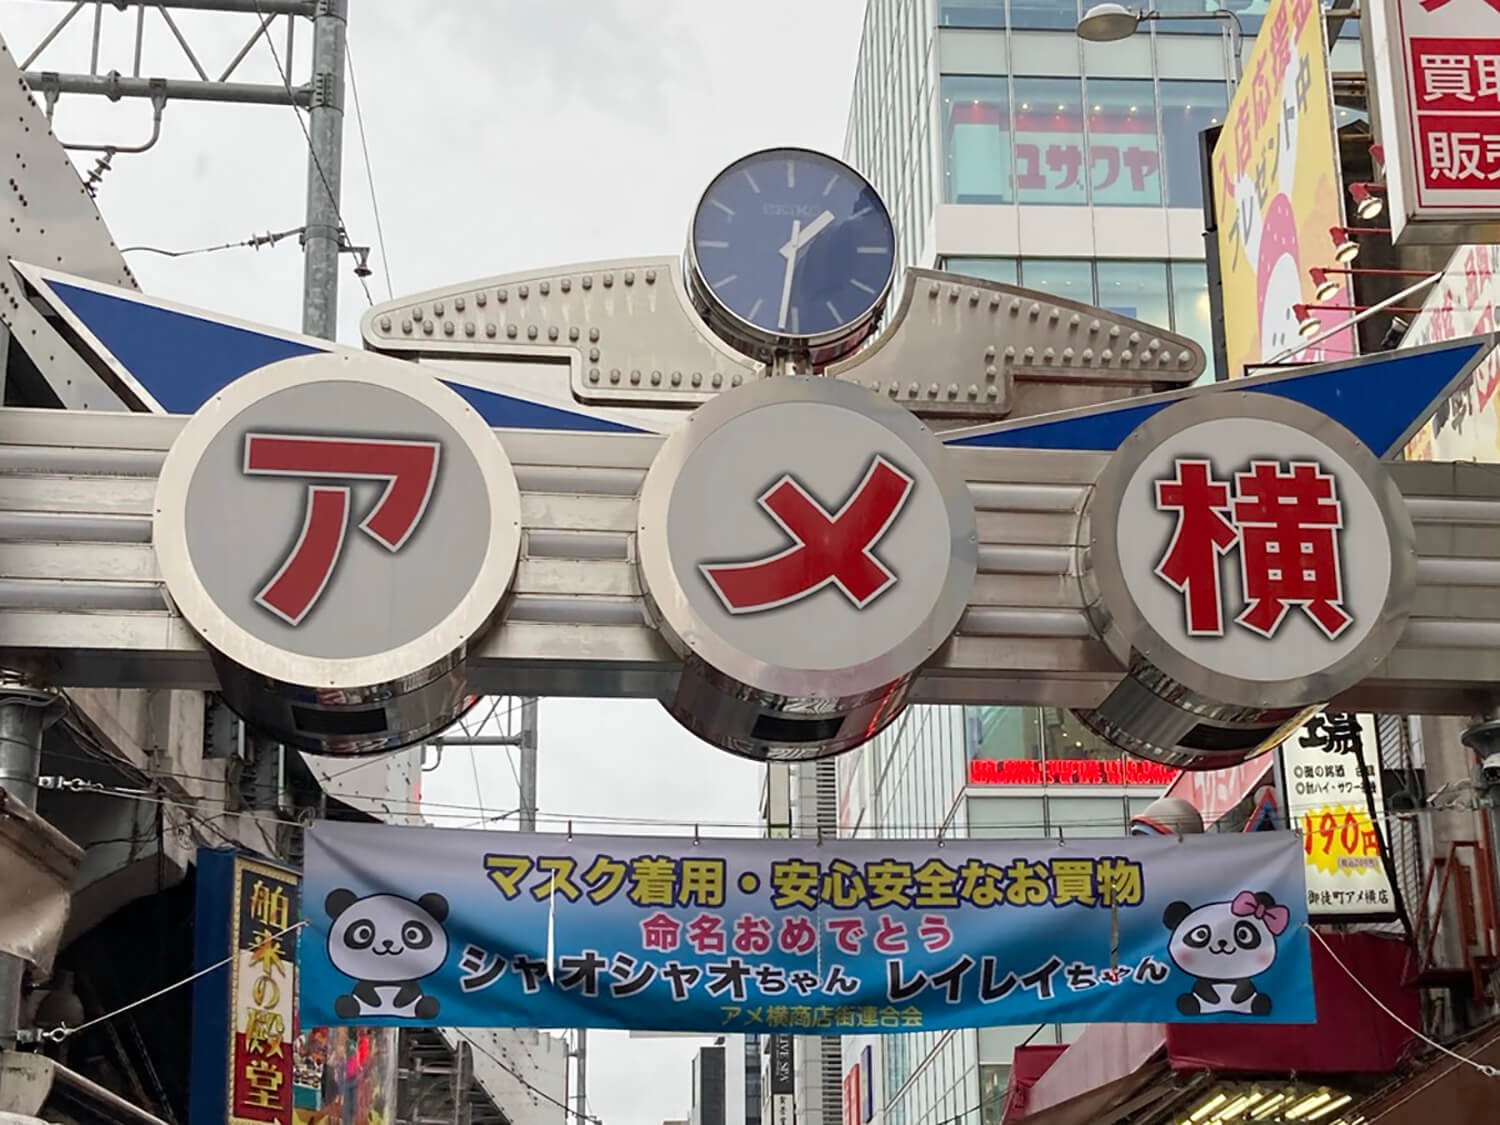 上野・アメ横入口にある時計。あまり時計があることを普段意識しないが、存在している。